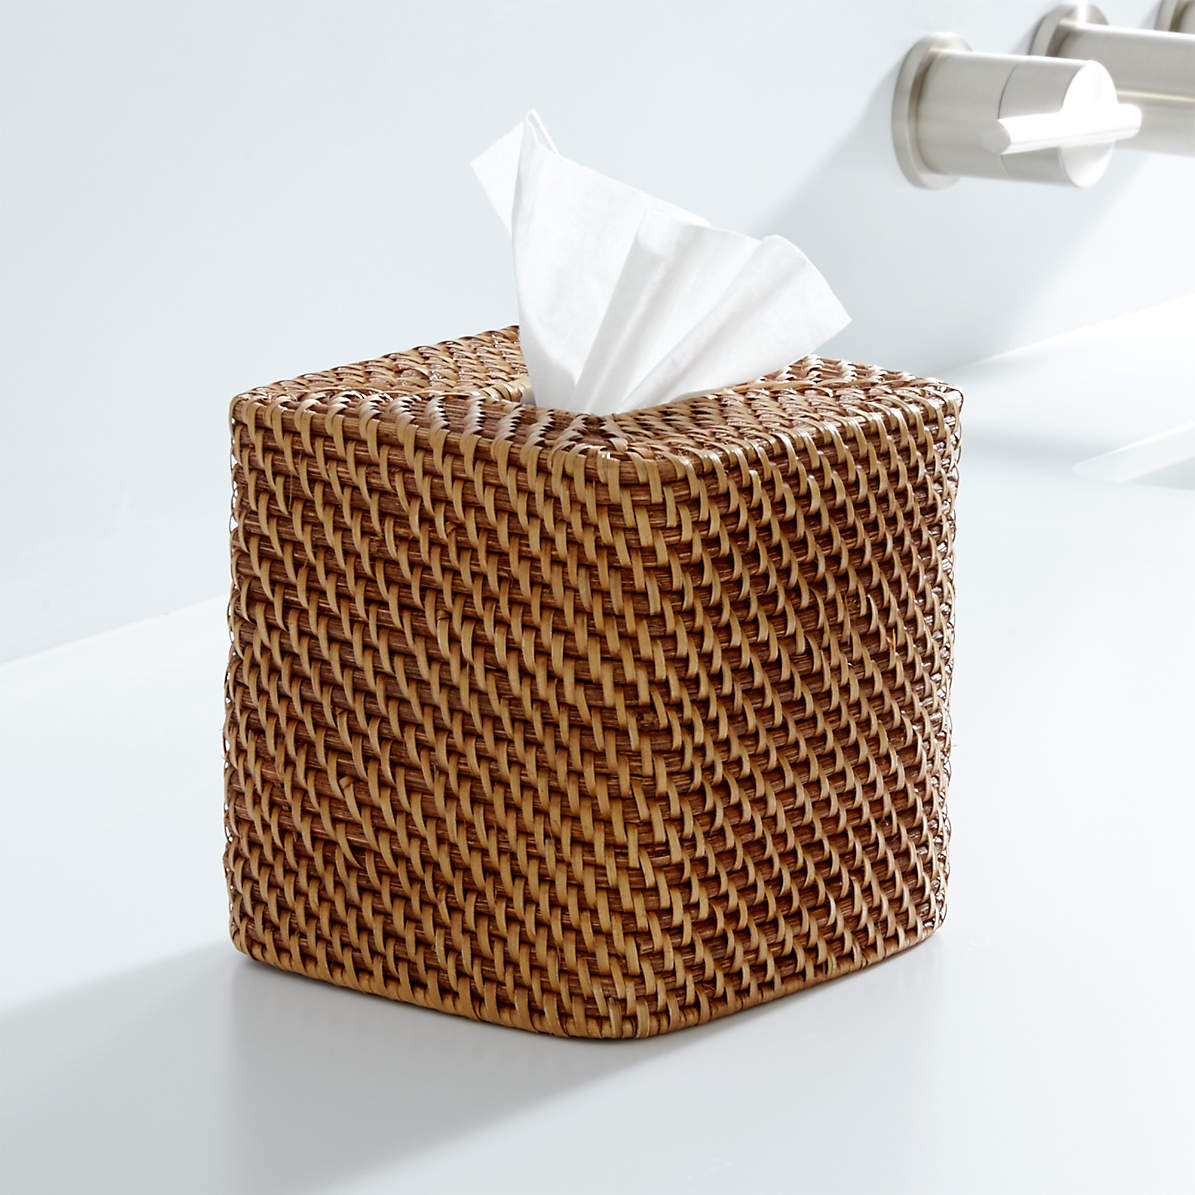 tissue box cover rattan